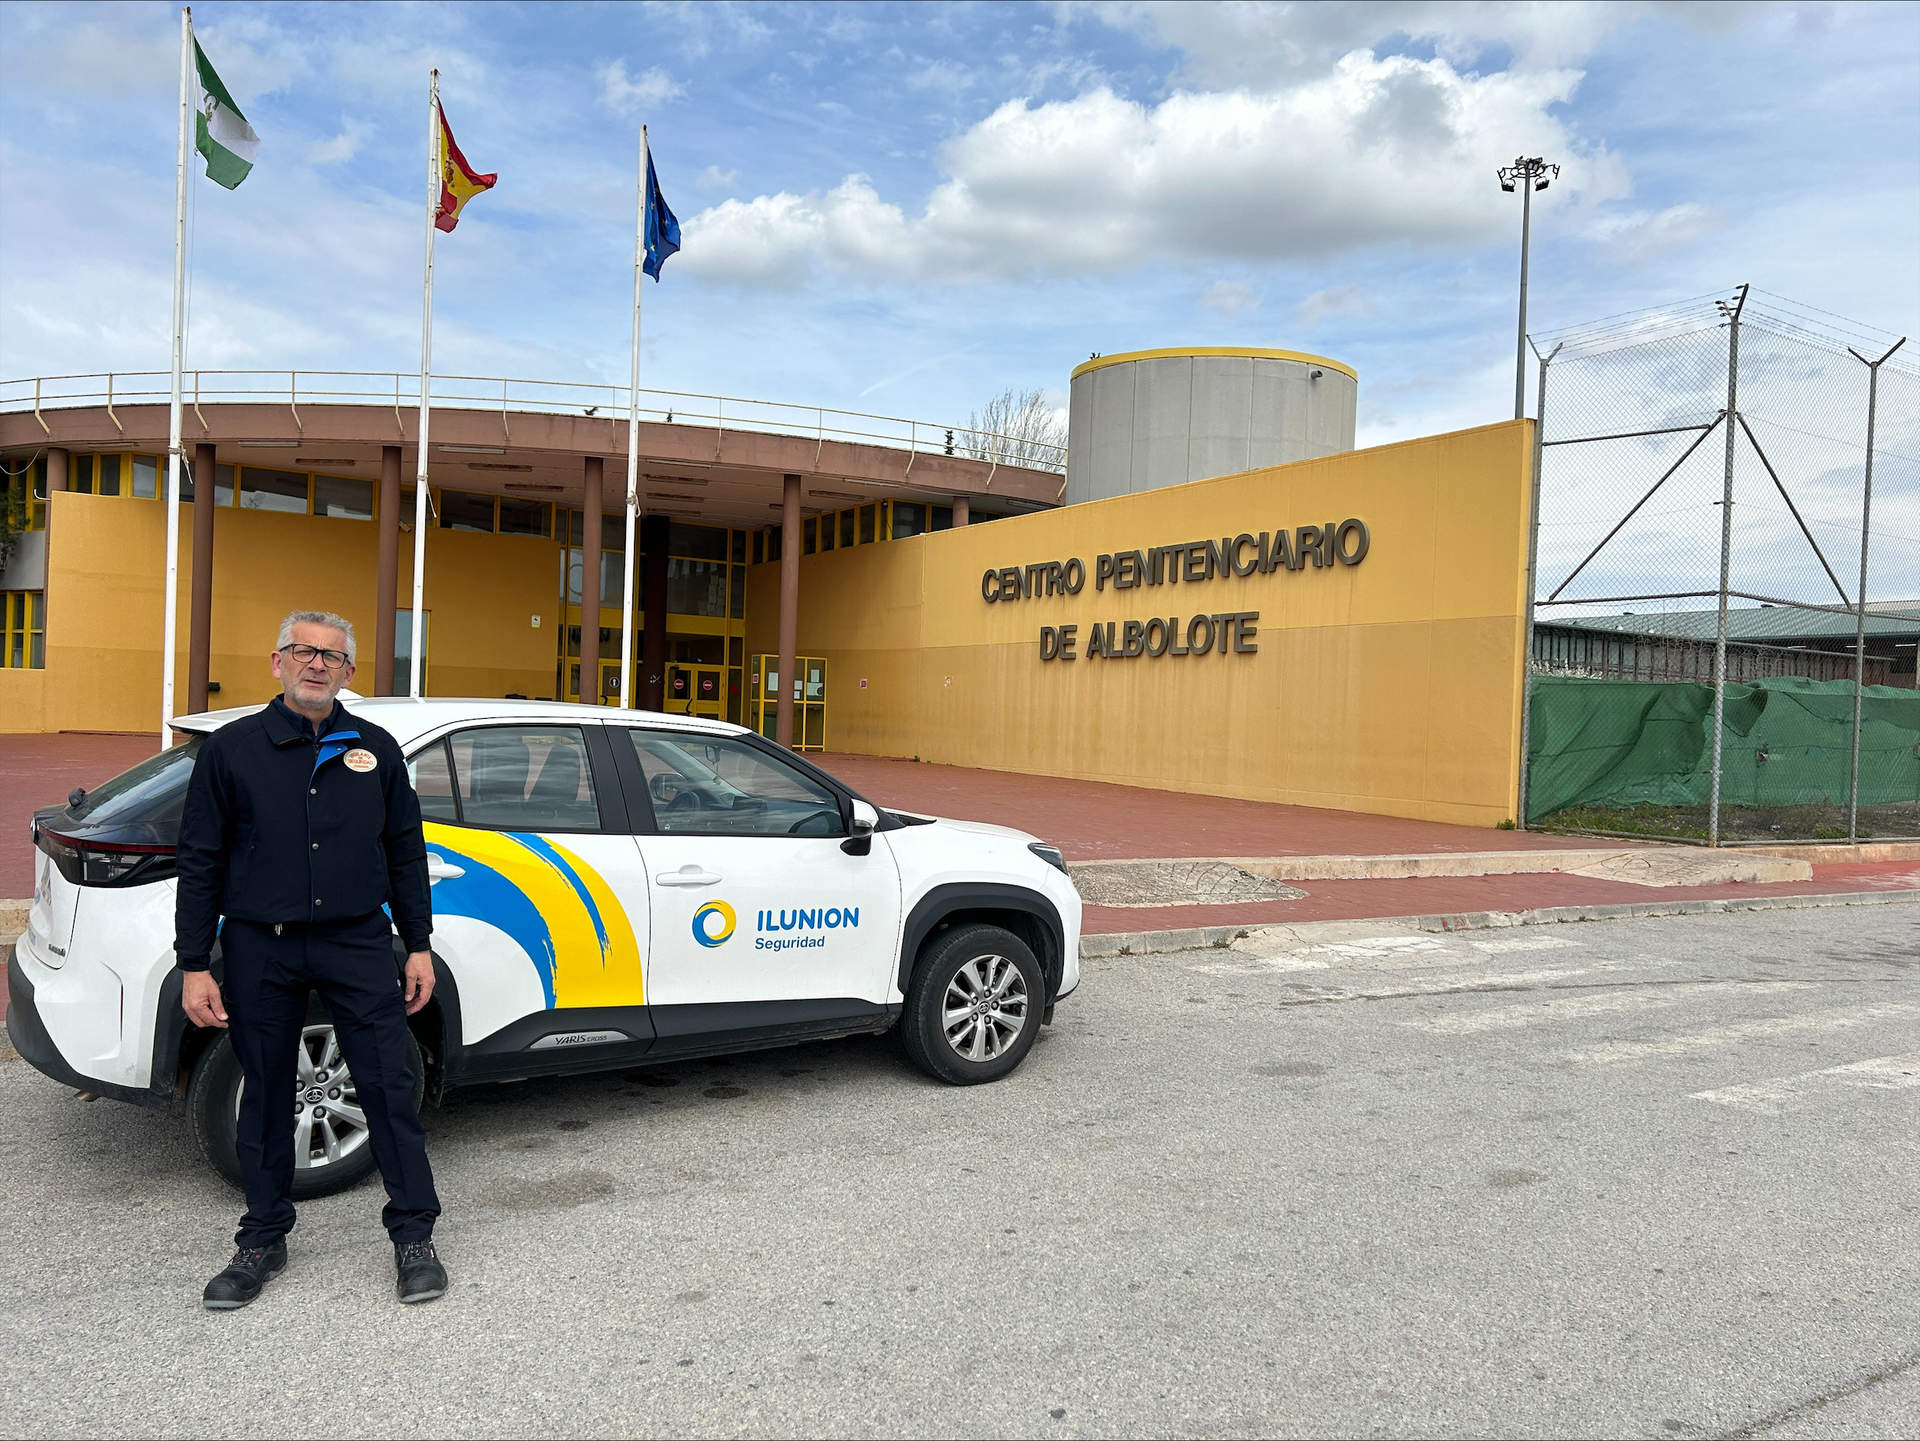 Ilunion gestionará la seguridad privada de todas las prisiones de Andalucía durante los dos próximos años